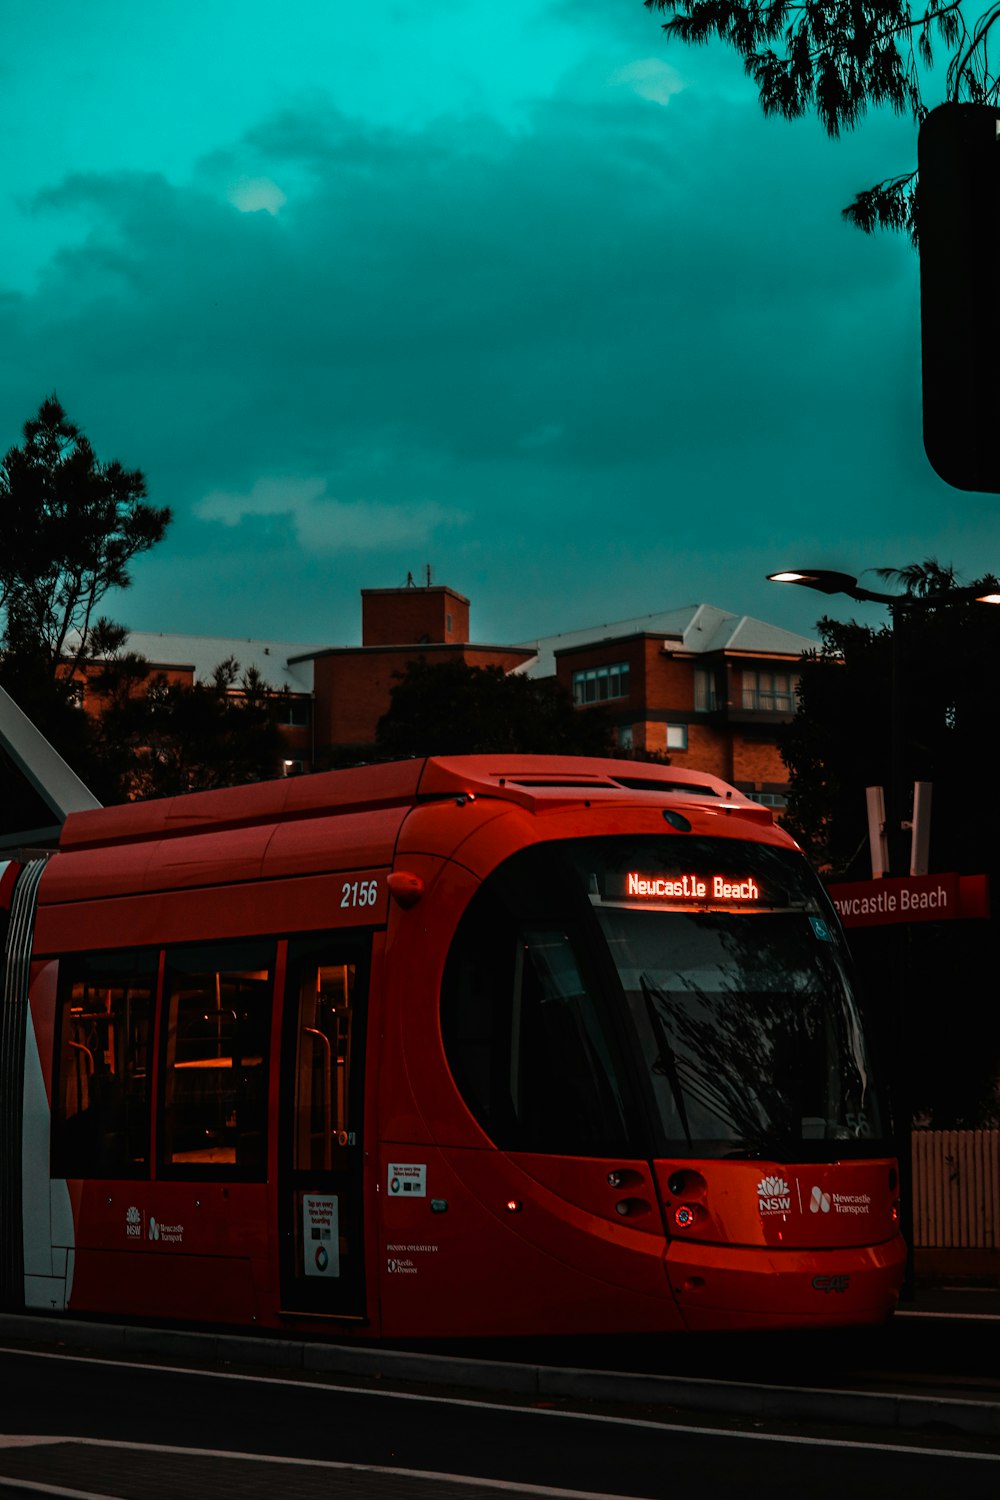 Autobús rojo de dos pisos en la carretera durante el día